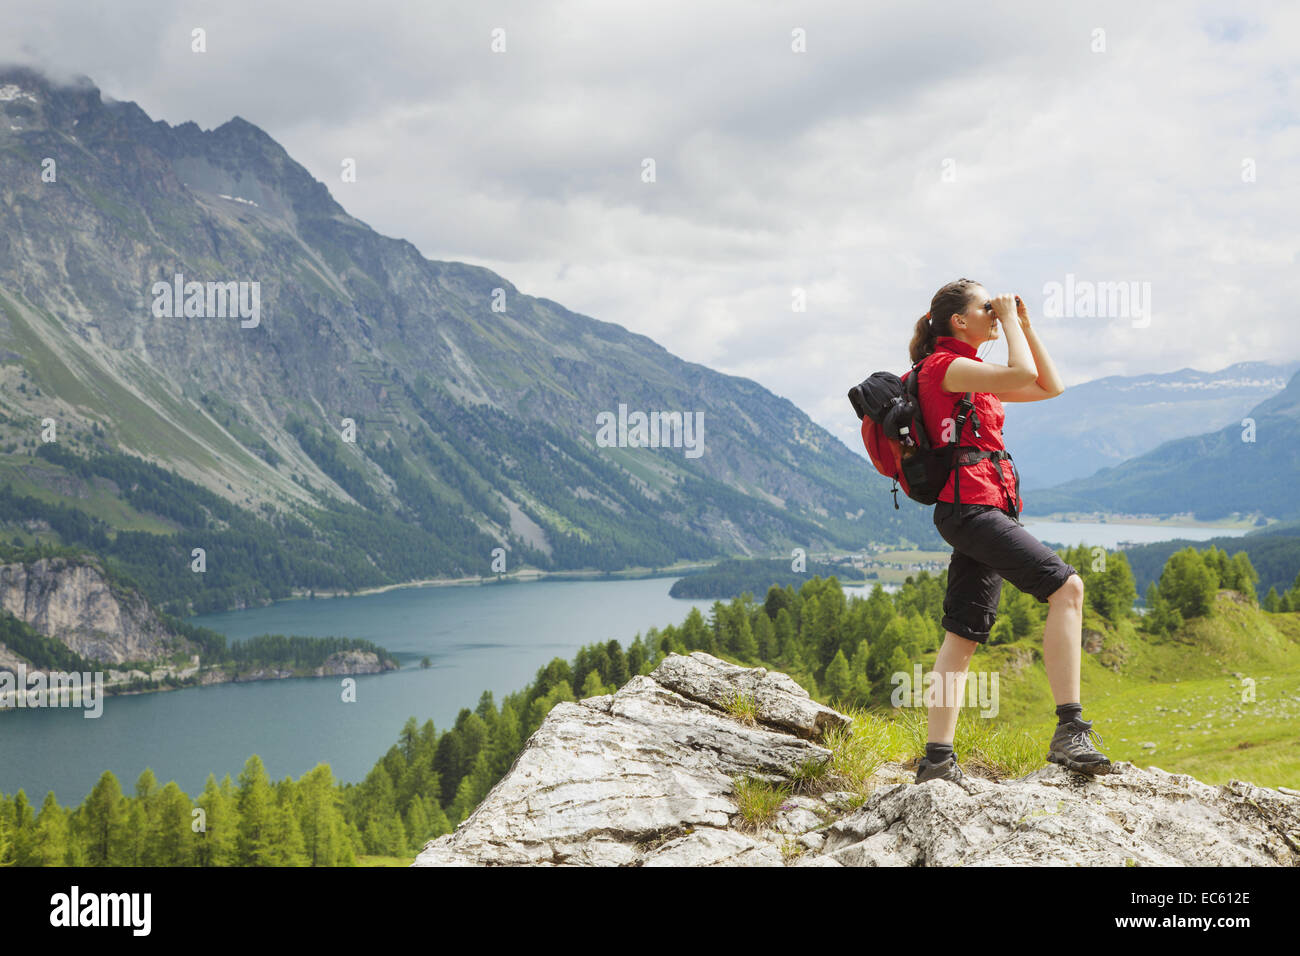 Wanderer im Engadin Durchsicht Fernglas See Natur Berge der Schweiz  weibliche Freiheit suchen St zu beobachten Stockfotografie - Alamy